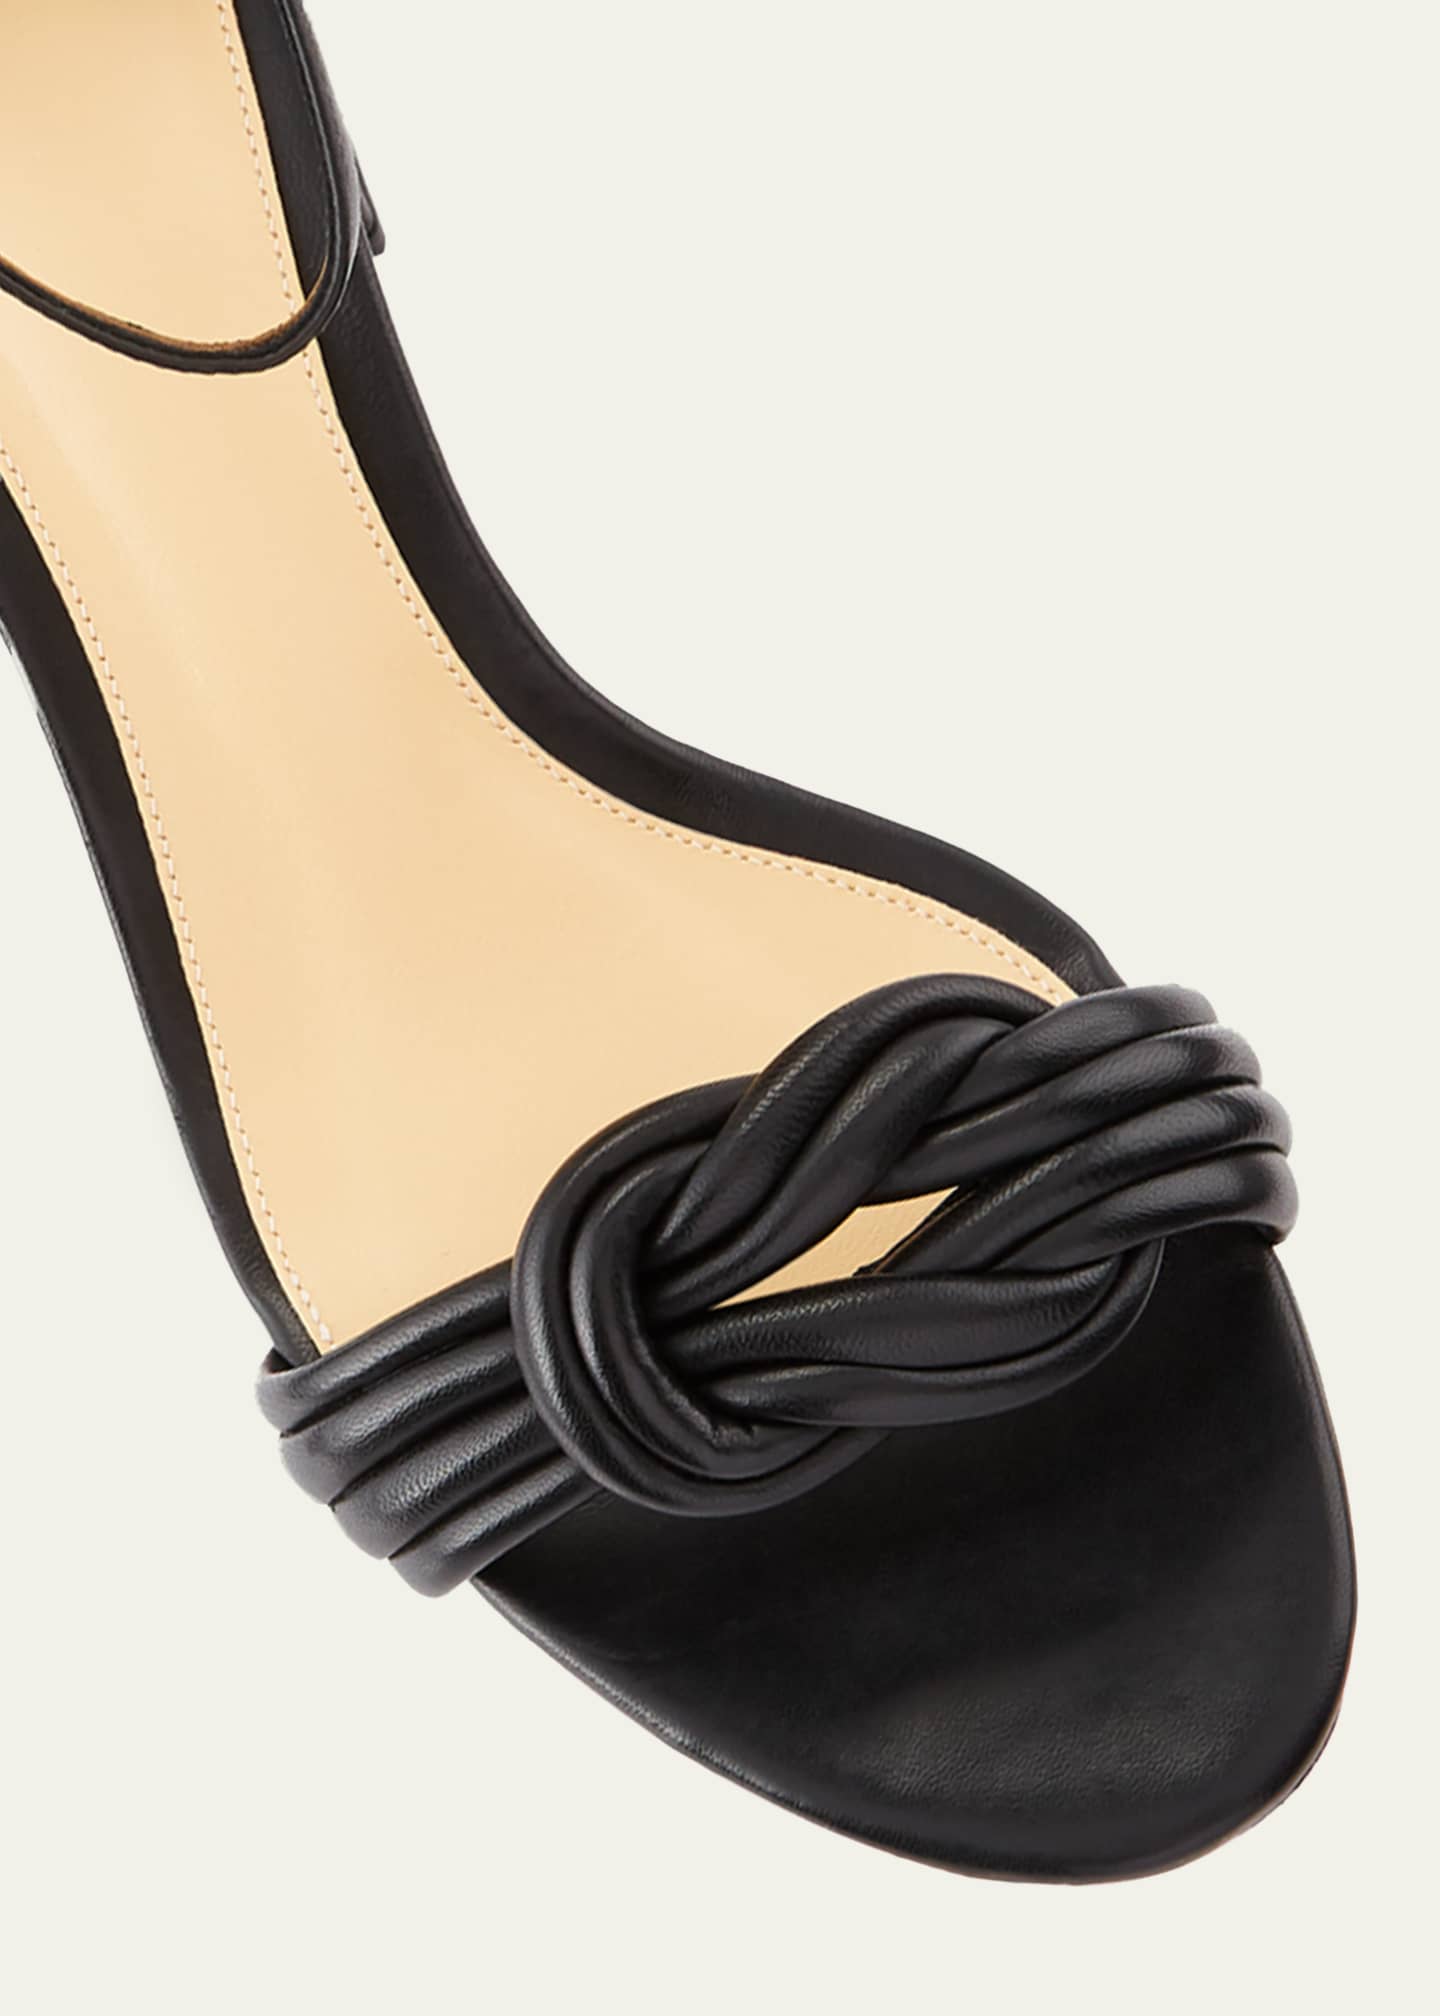 Alexandre Birman Vicky Knot Leather Sandals Image 2 of 2